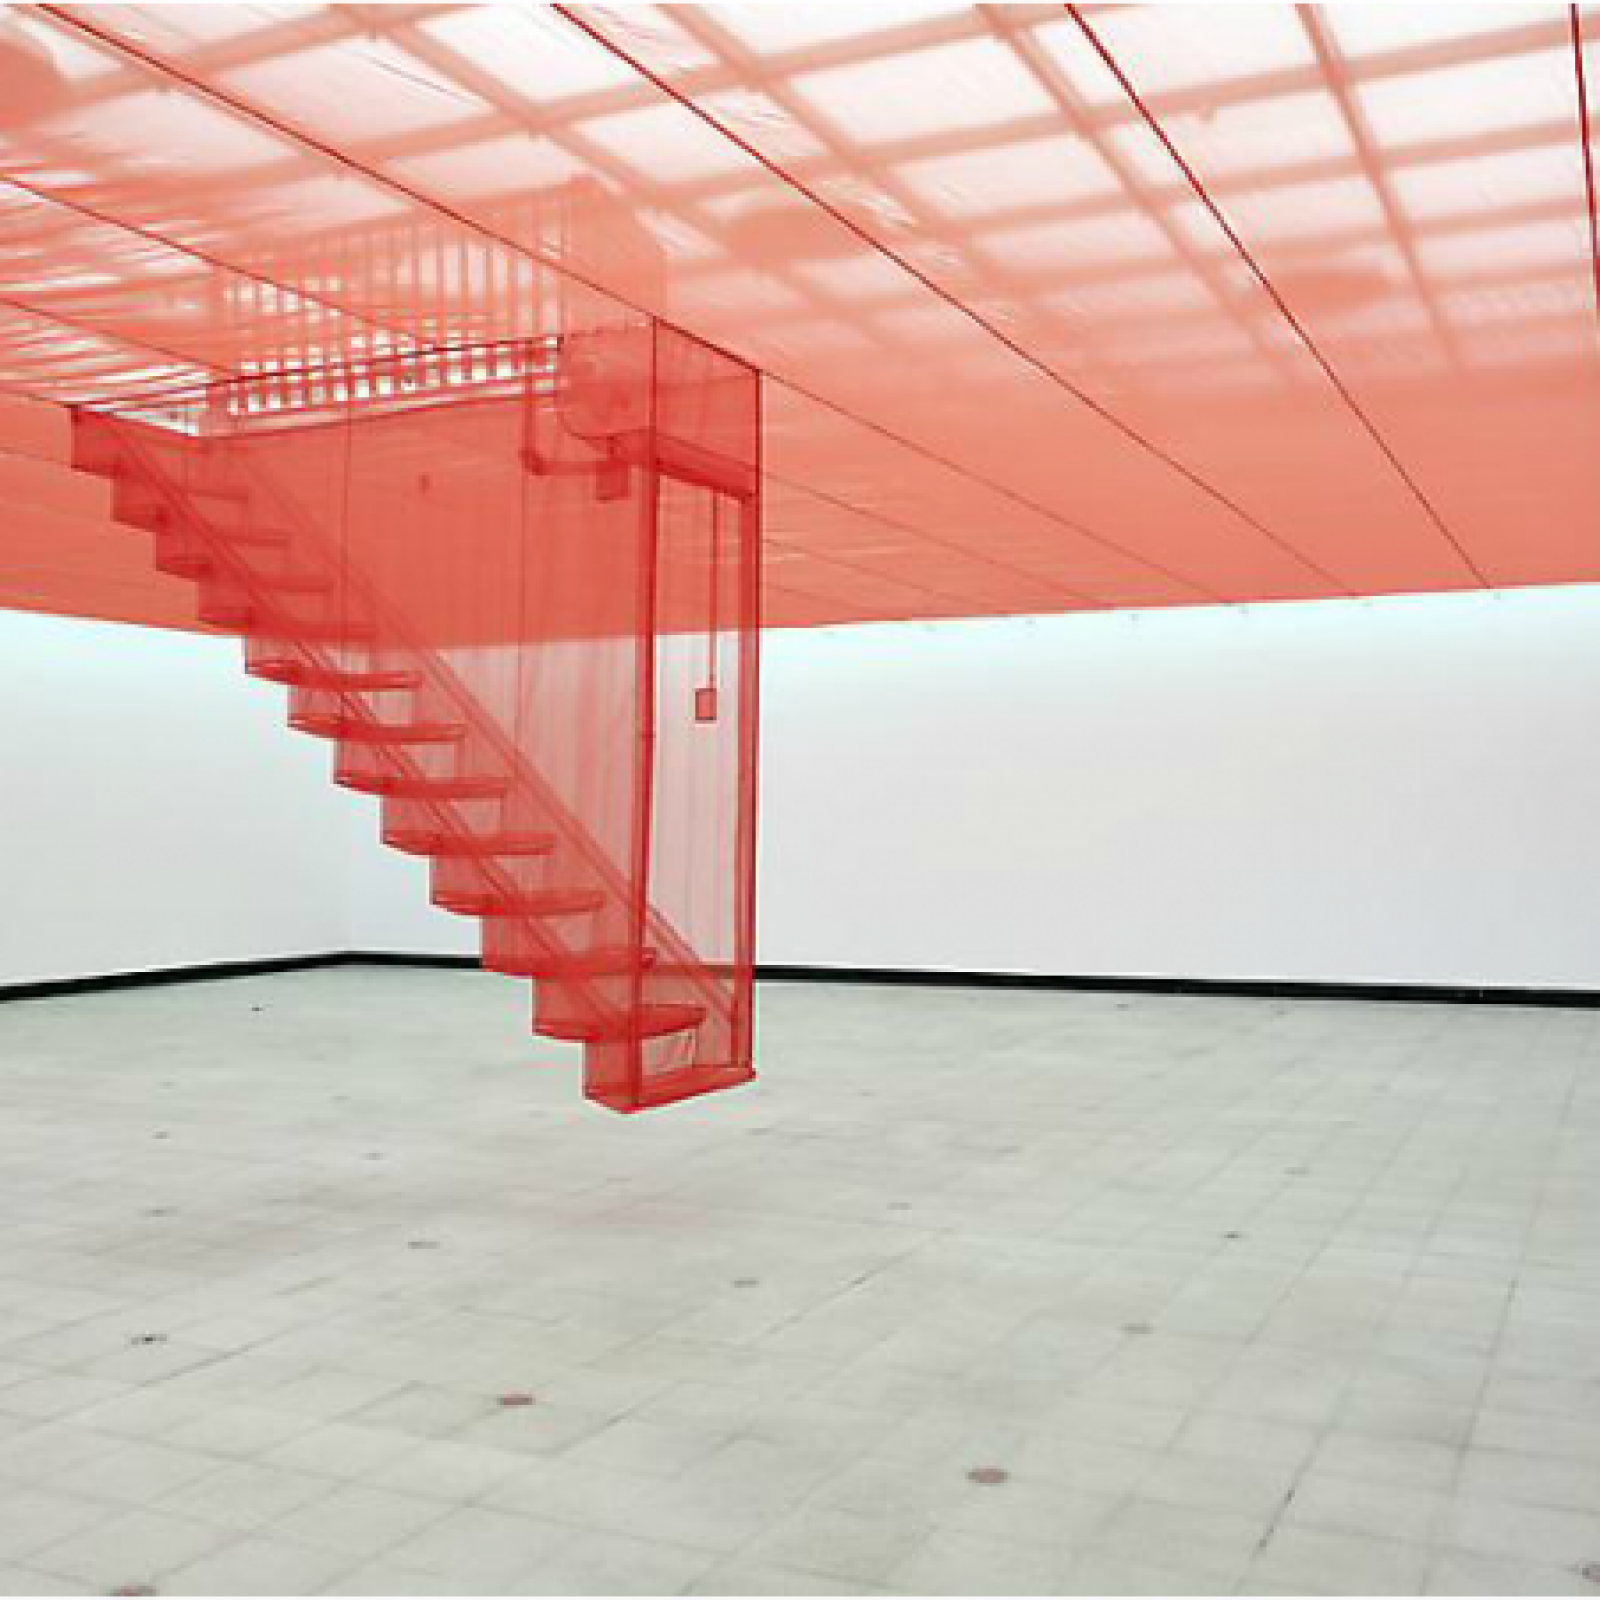 Do Ho Suh, Staircase IV, 2004, nylon traslúcido, dimensiones variables